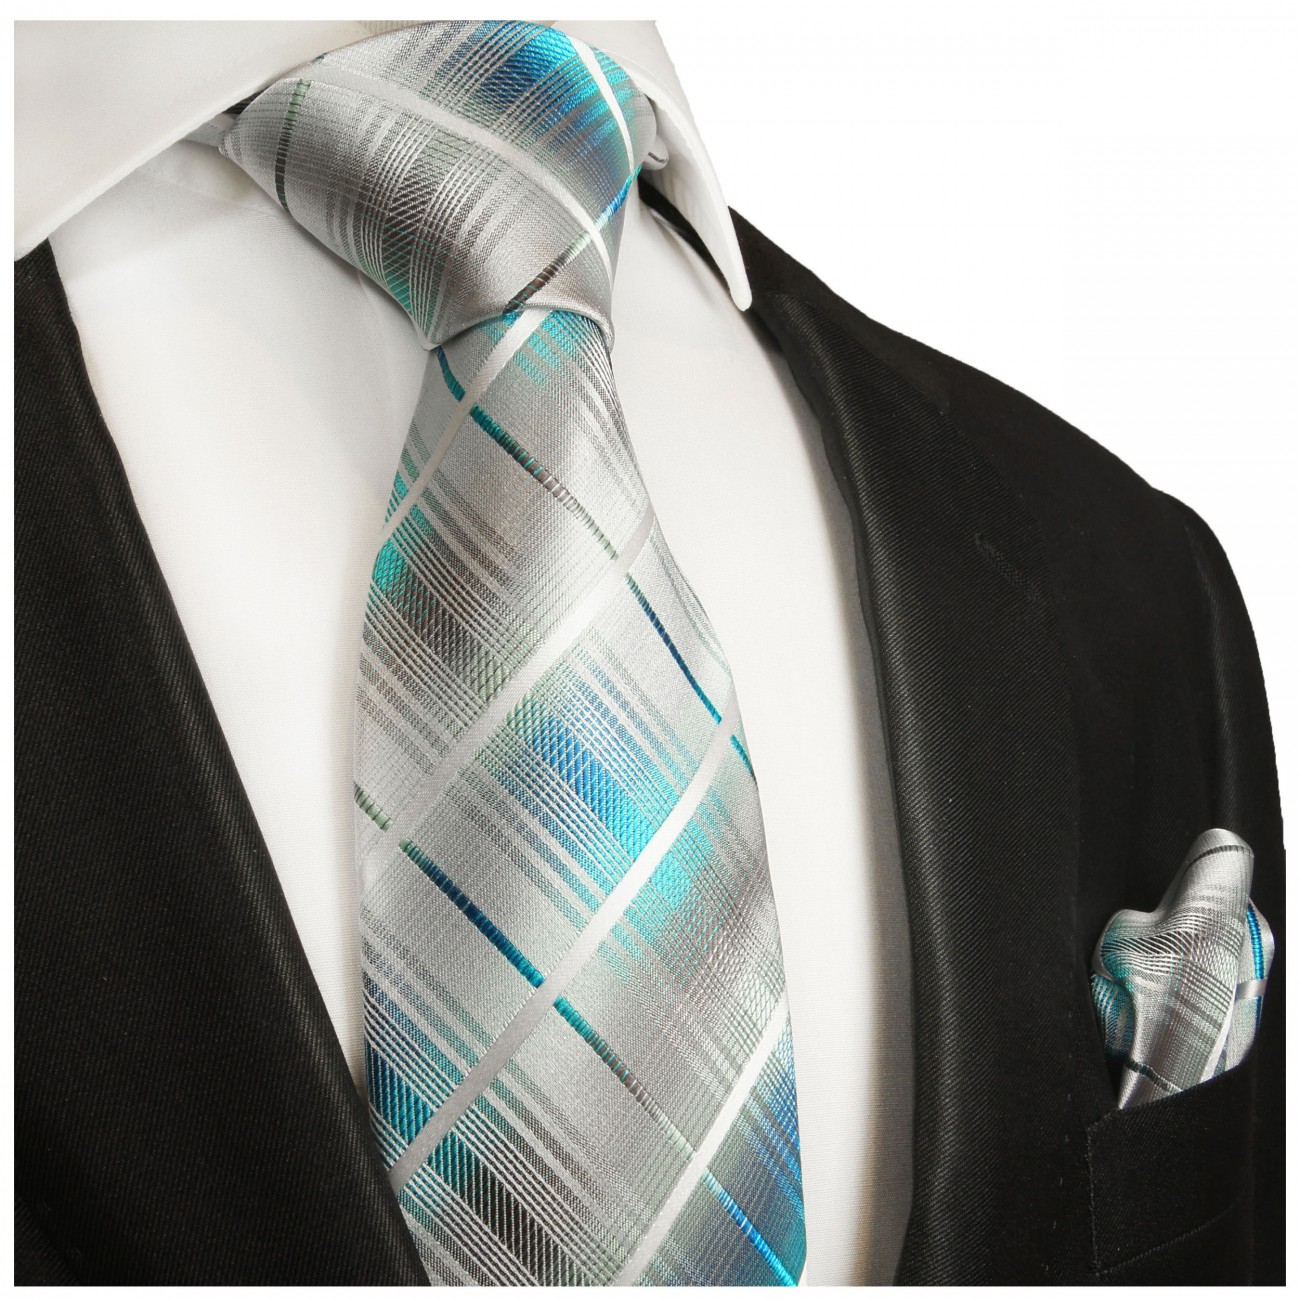 Krawatte türkis mit Einstecktuch grau weiss gestreift Seide 2027